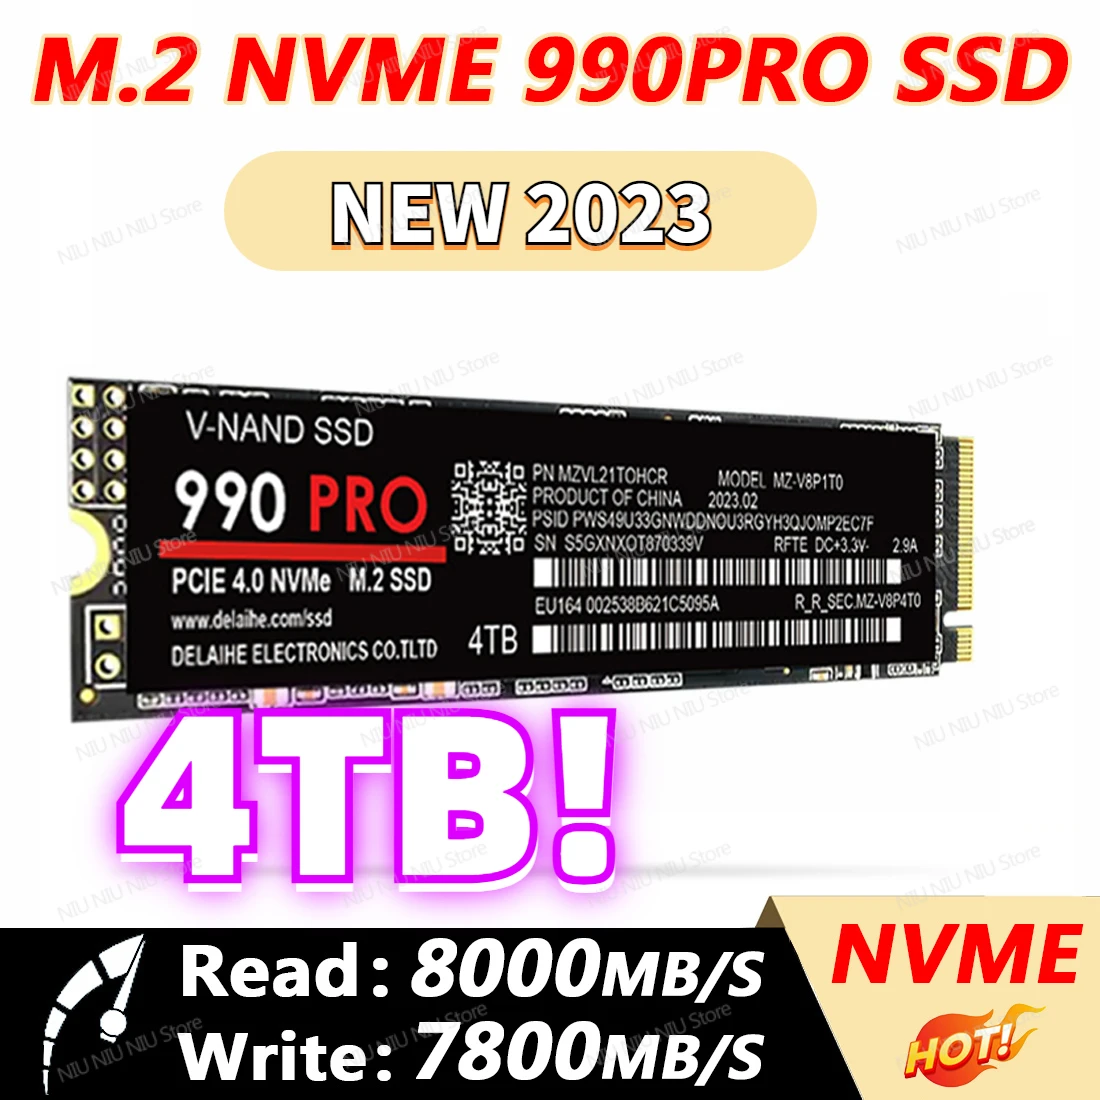 

2TB SSD NVME M2 990 Evo Plus 990PRO 4TB M.2 SSD Nvme Pcie 500GB 1TB Internal Solid State Hard Drive Inch Laptop Desktop TLC PC